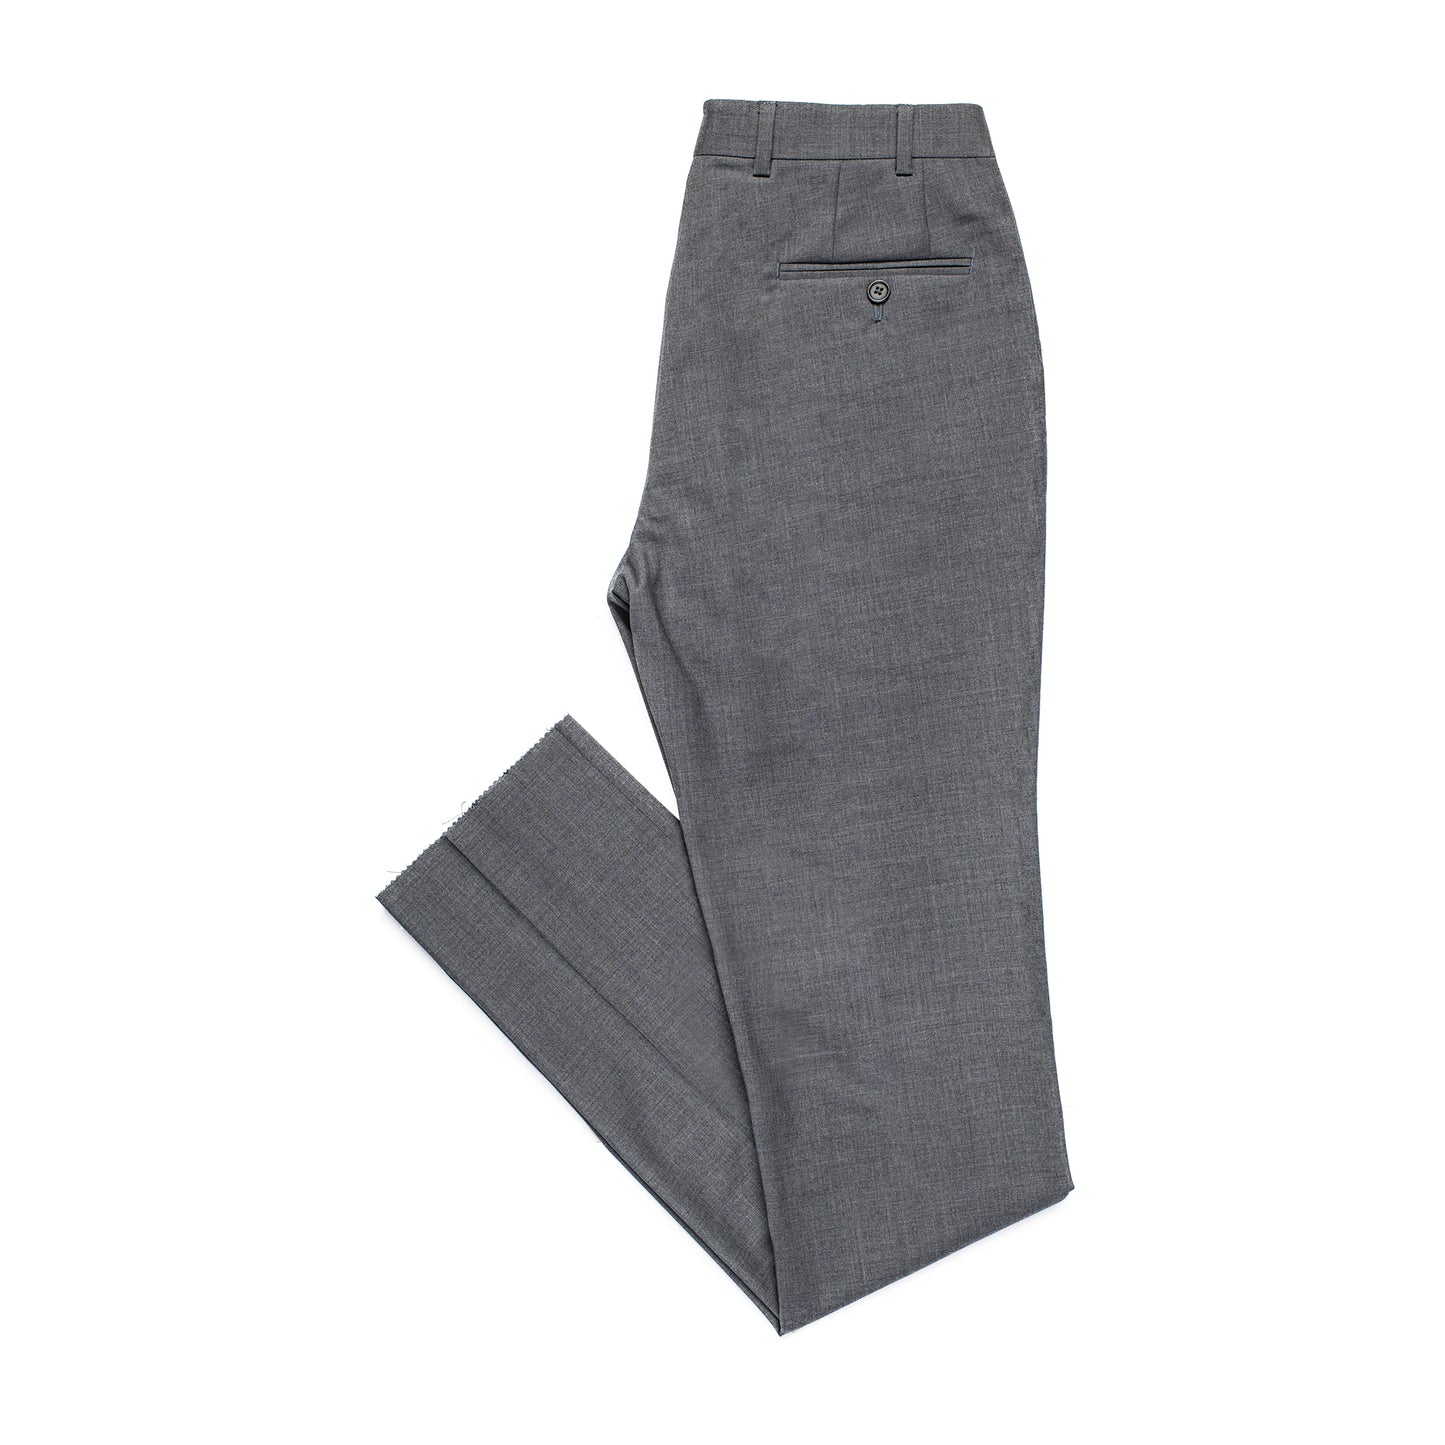 medium grey trouser pant for men